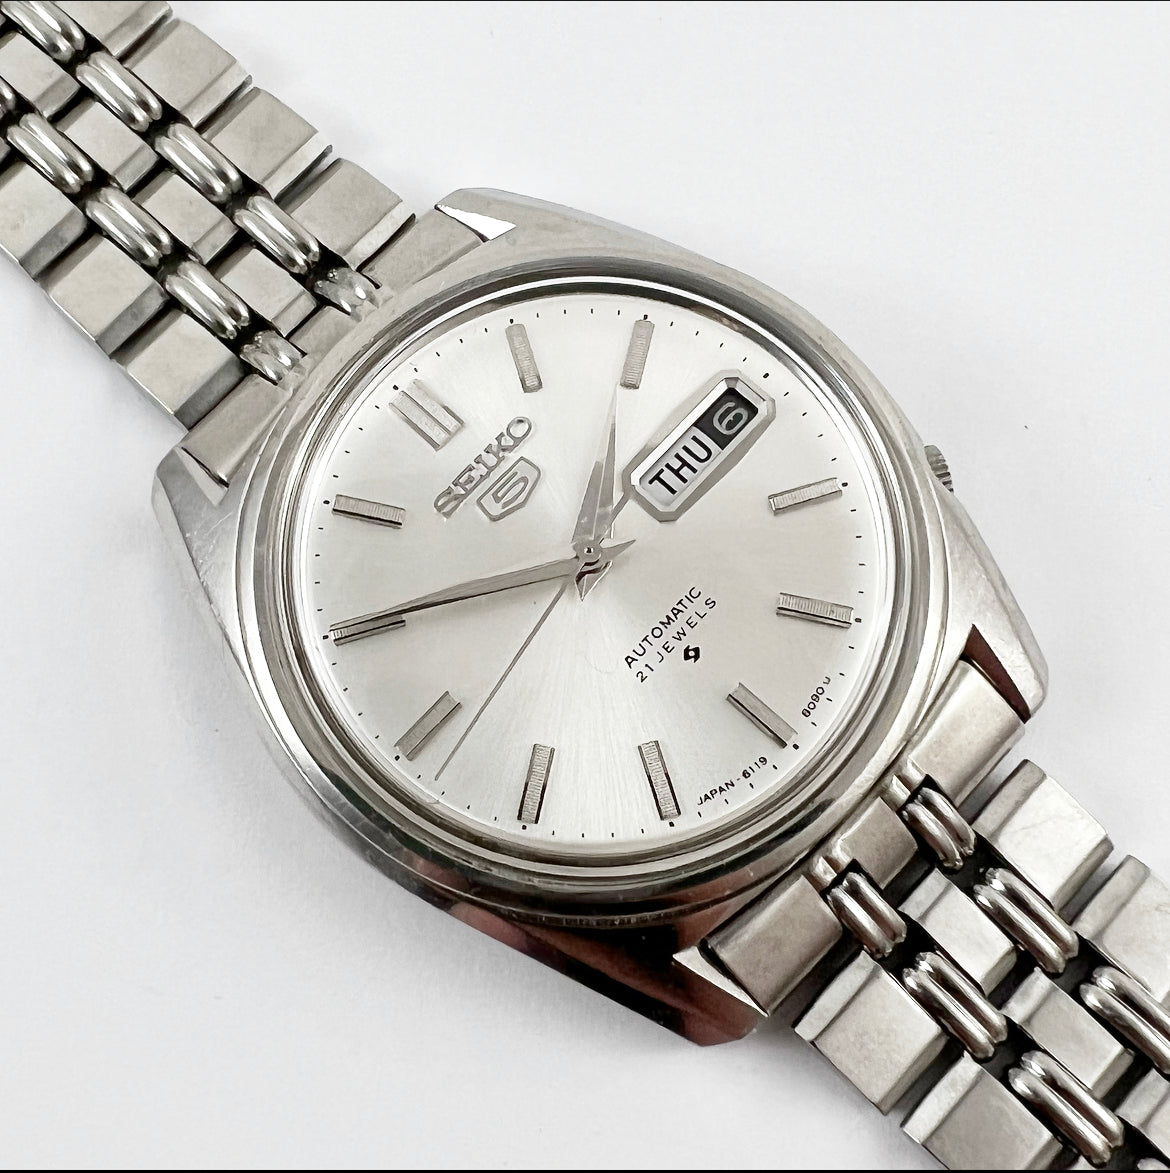 1971 Seiko 5 6119-8093 Automatic – Mornington Watches